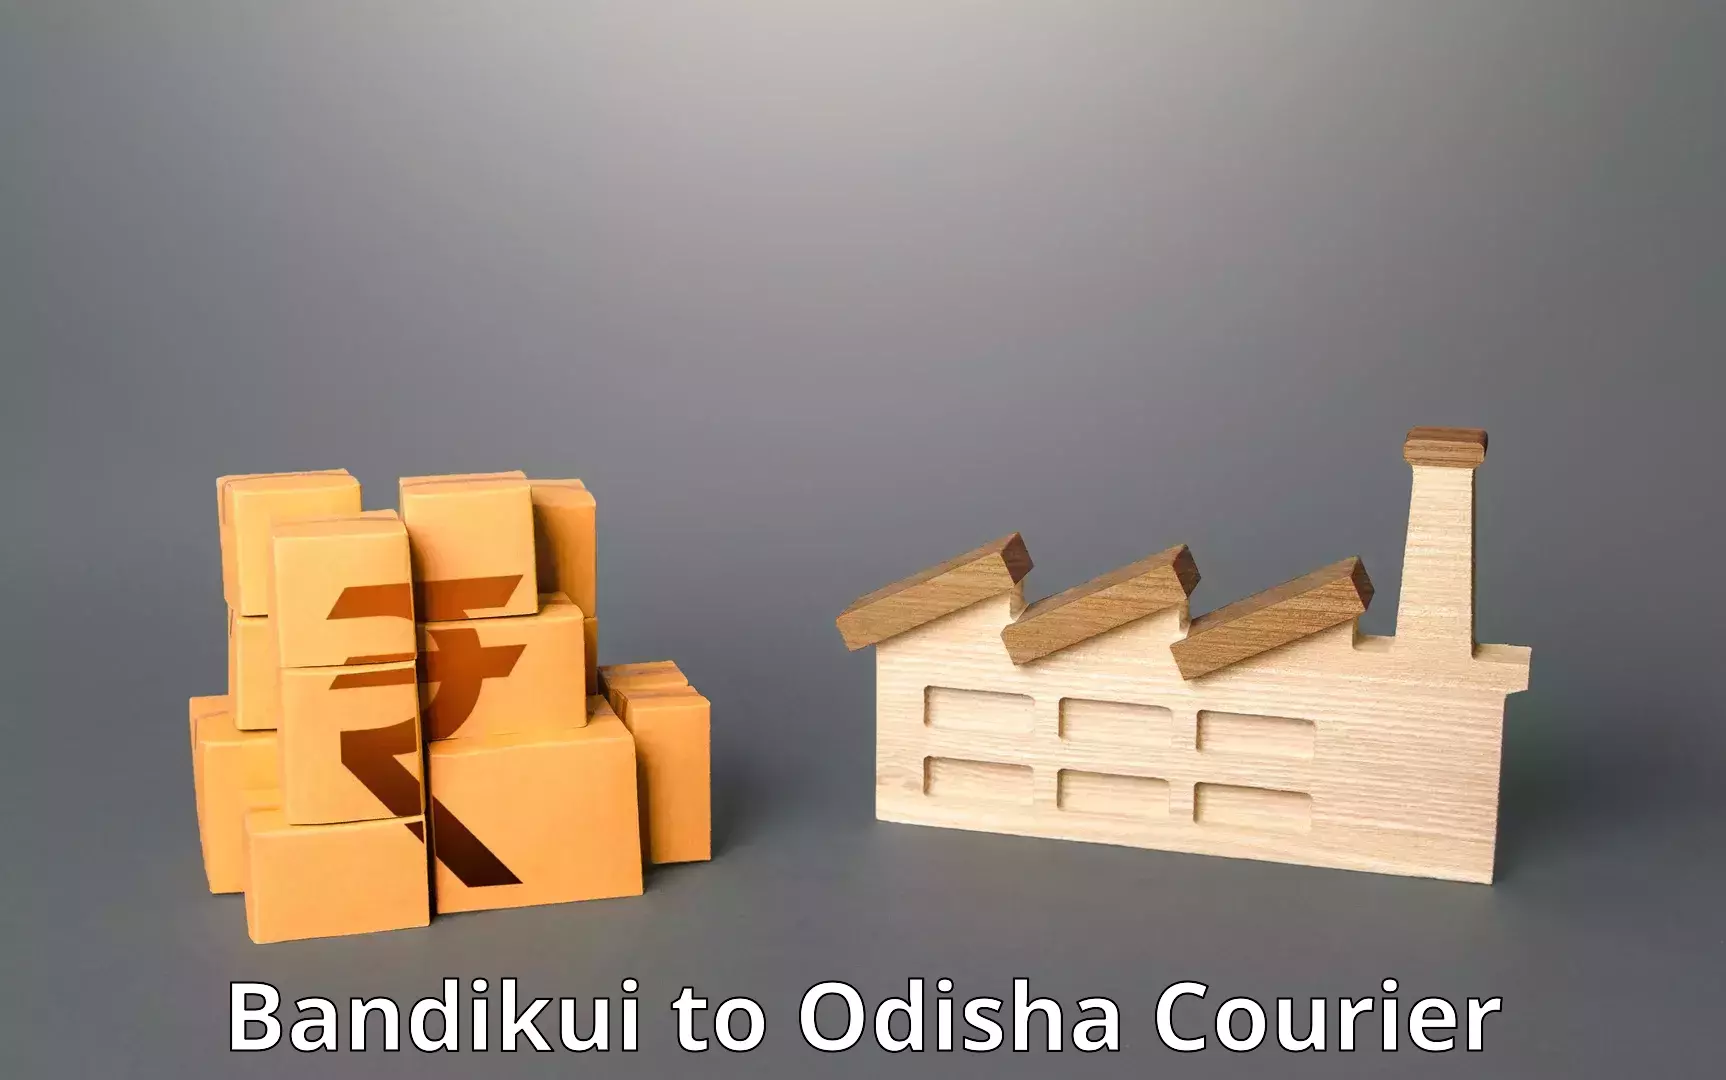 Reliable courier service Bandikui to Odisha